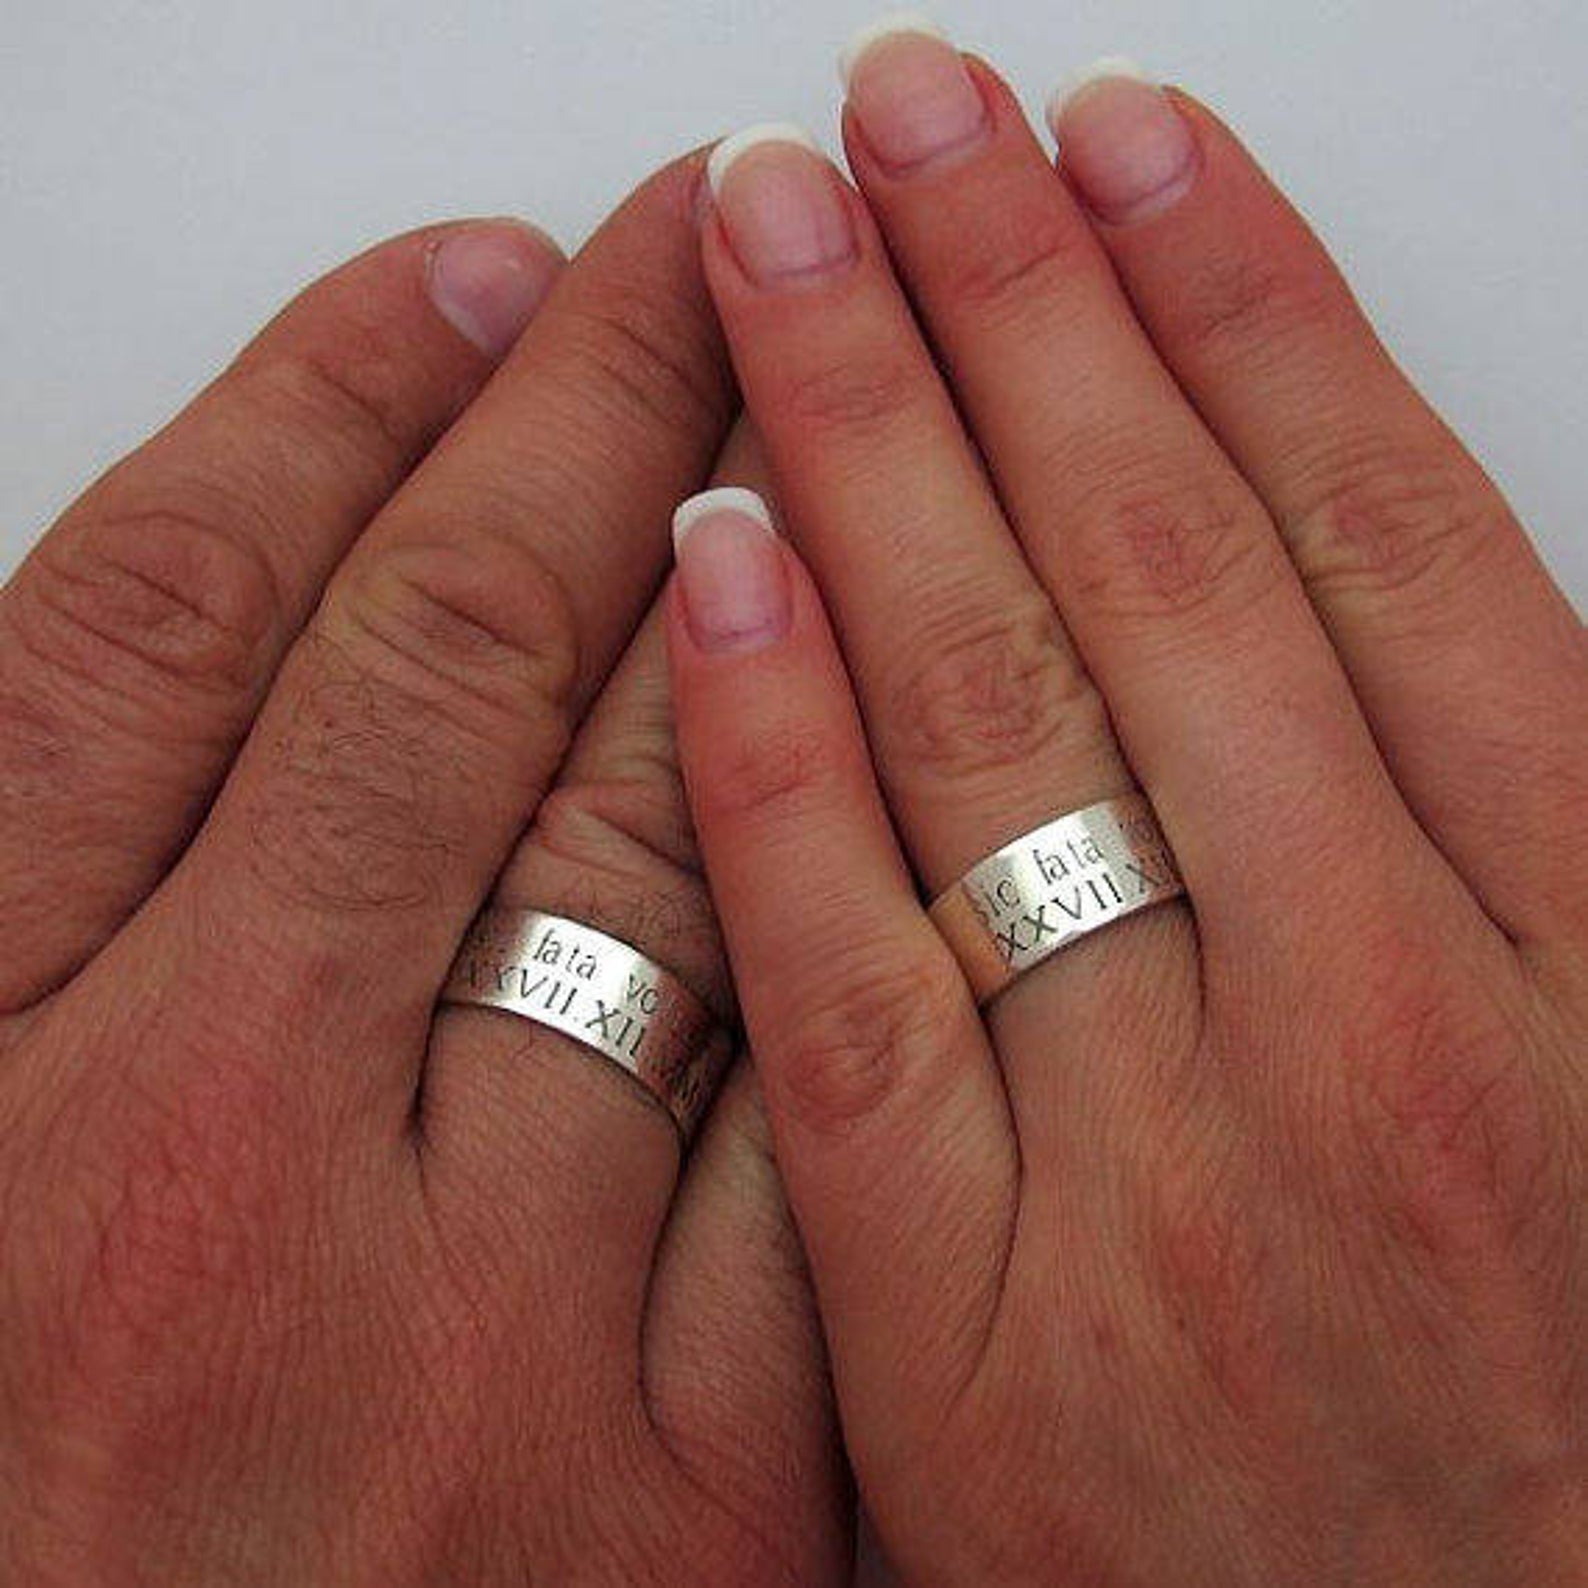 4mm Windsor Wedding Ring – Clogau